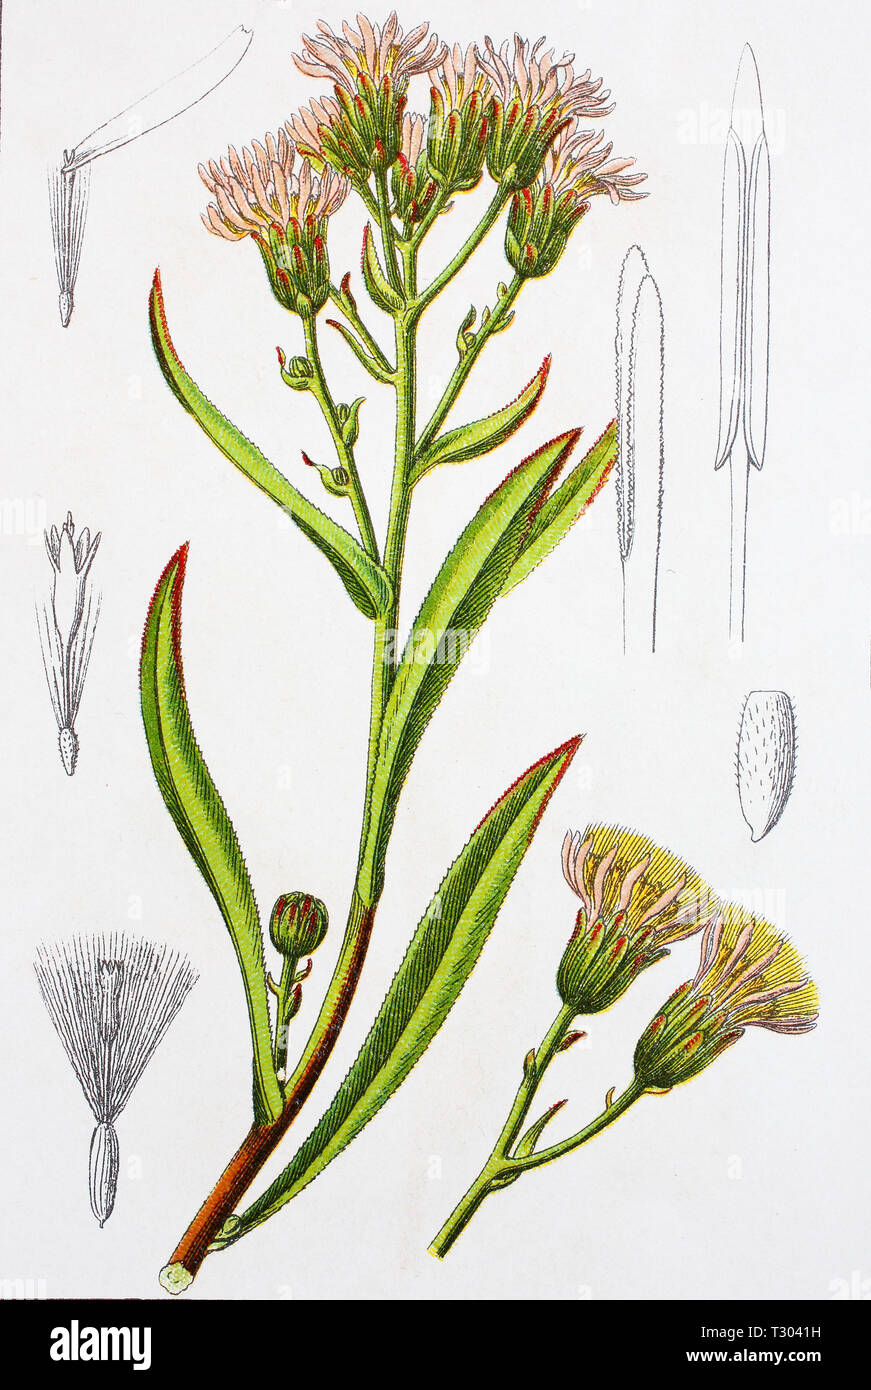 Amélioration numérique reproduction d'une illustration de Salz-Aster Strandaster,,, Aster tripolium aster, la mer, d'un tirage original du 19e siècle Banque D'Images